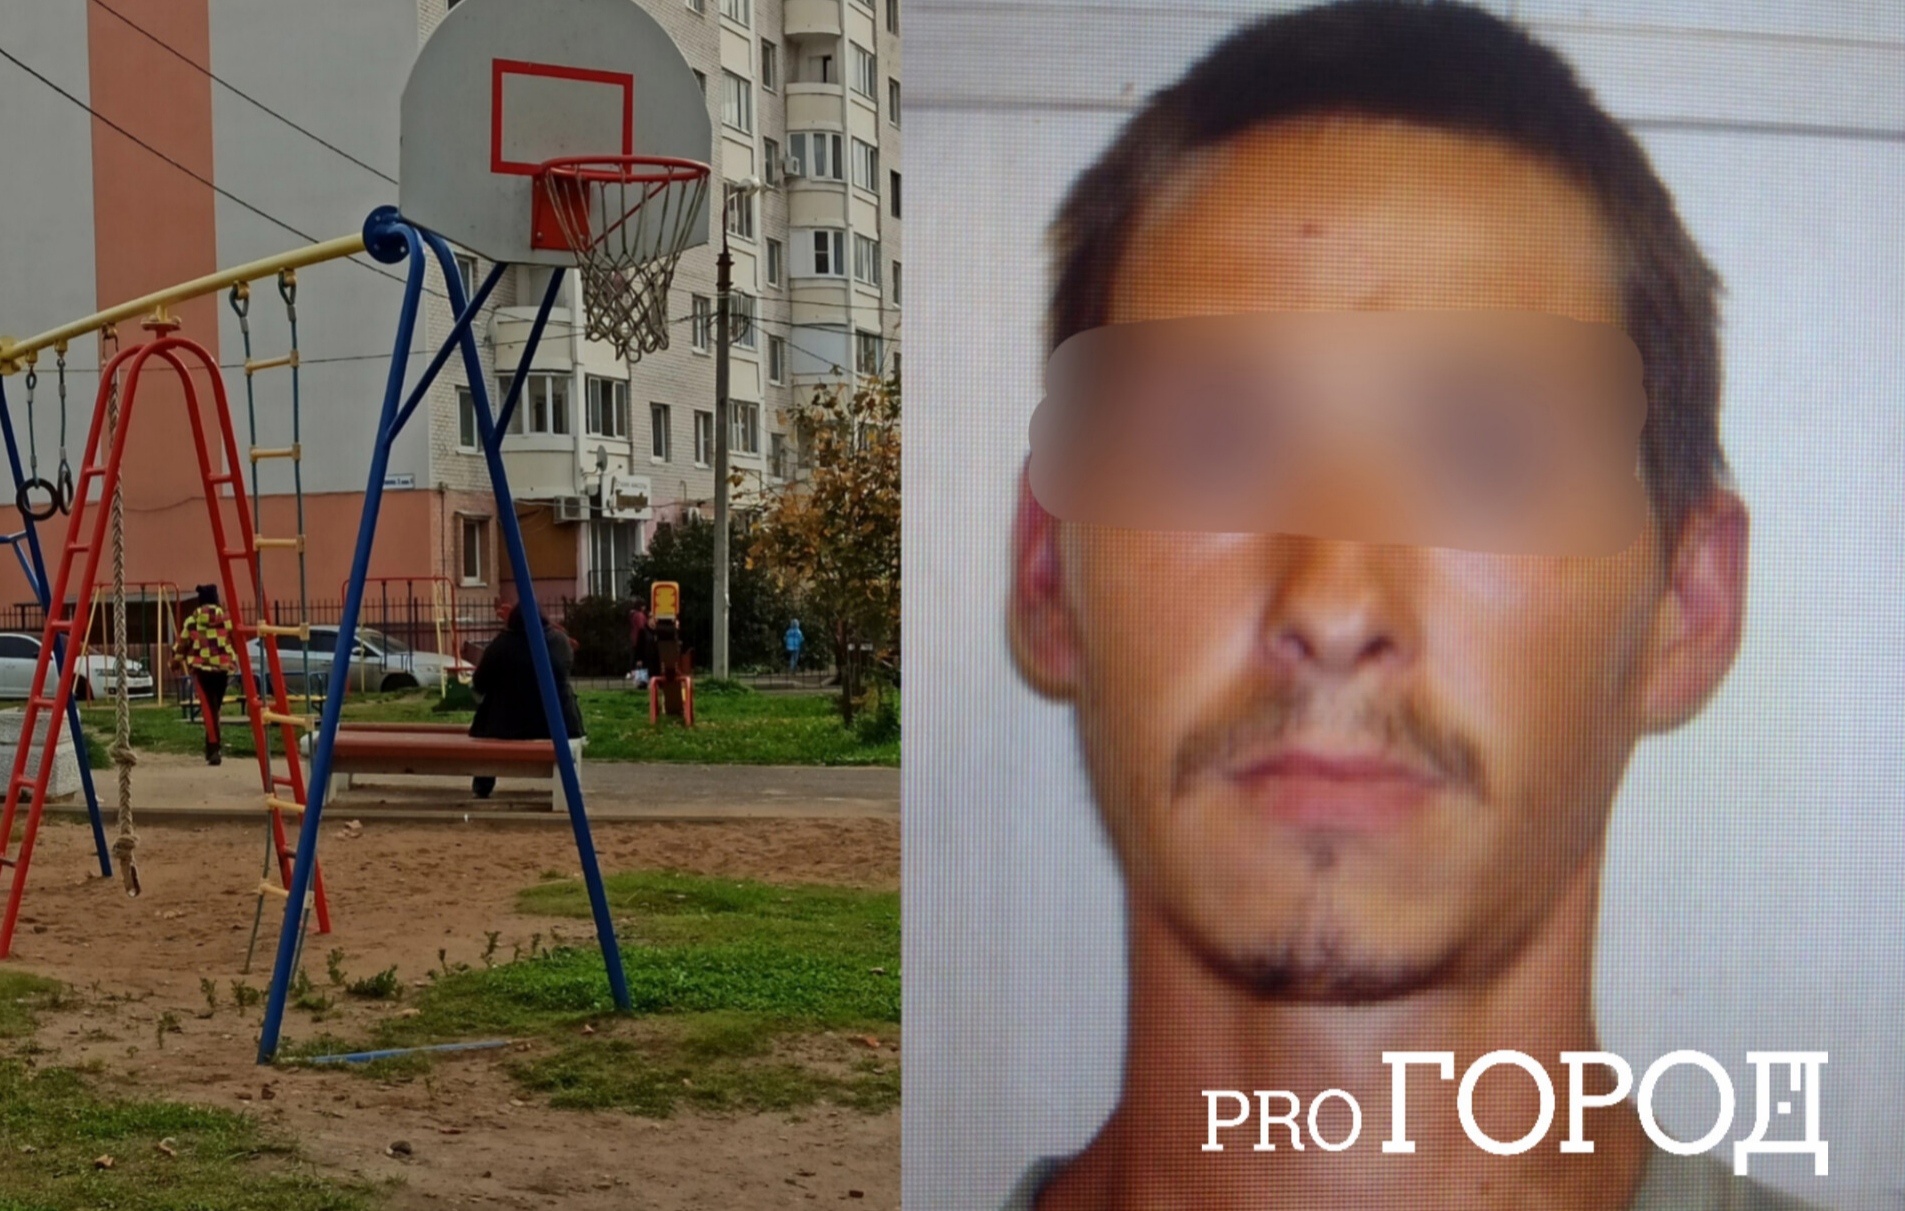  Ярославцы требуют устроить самосуд над педофилом, орудовавшим на детской площадке